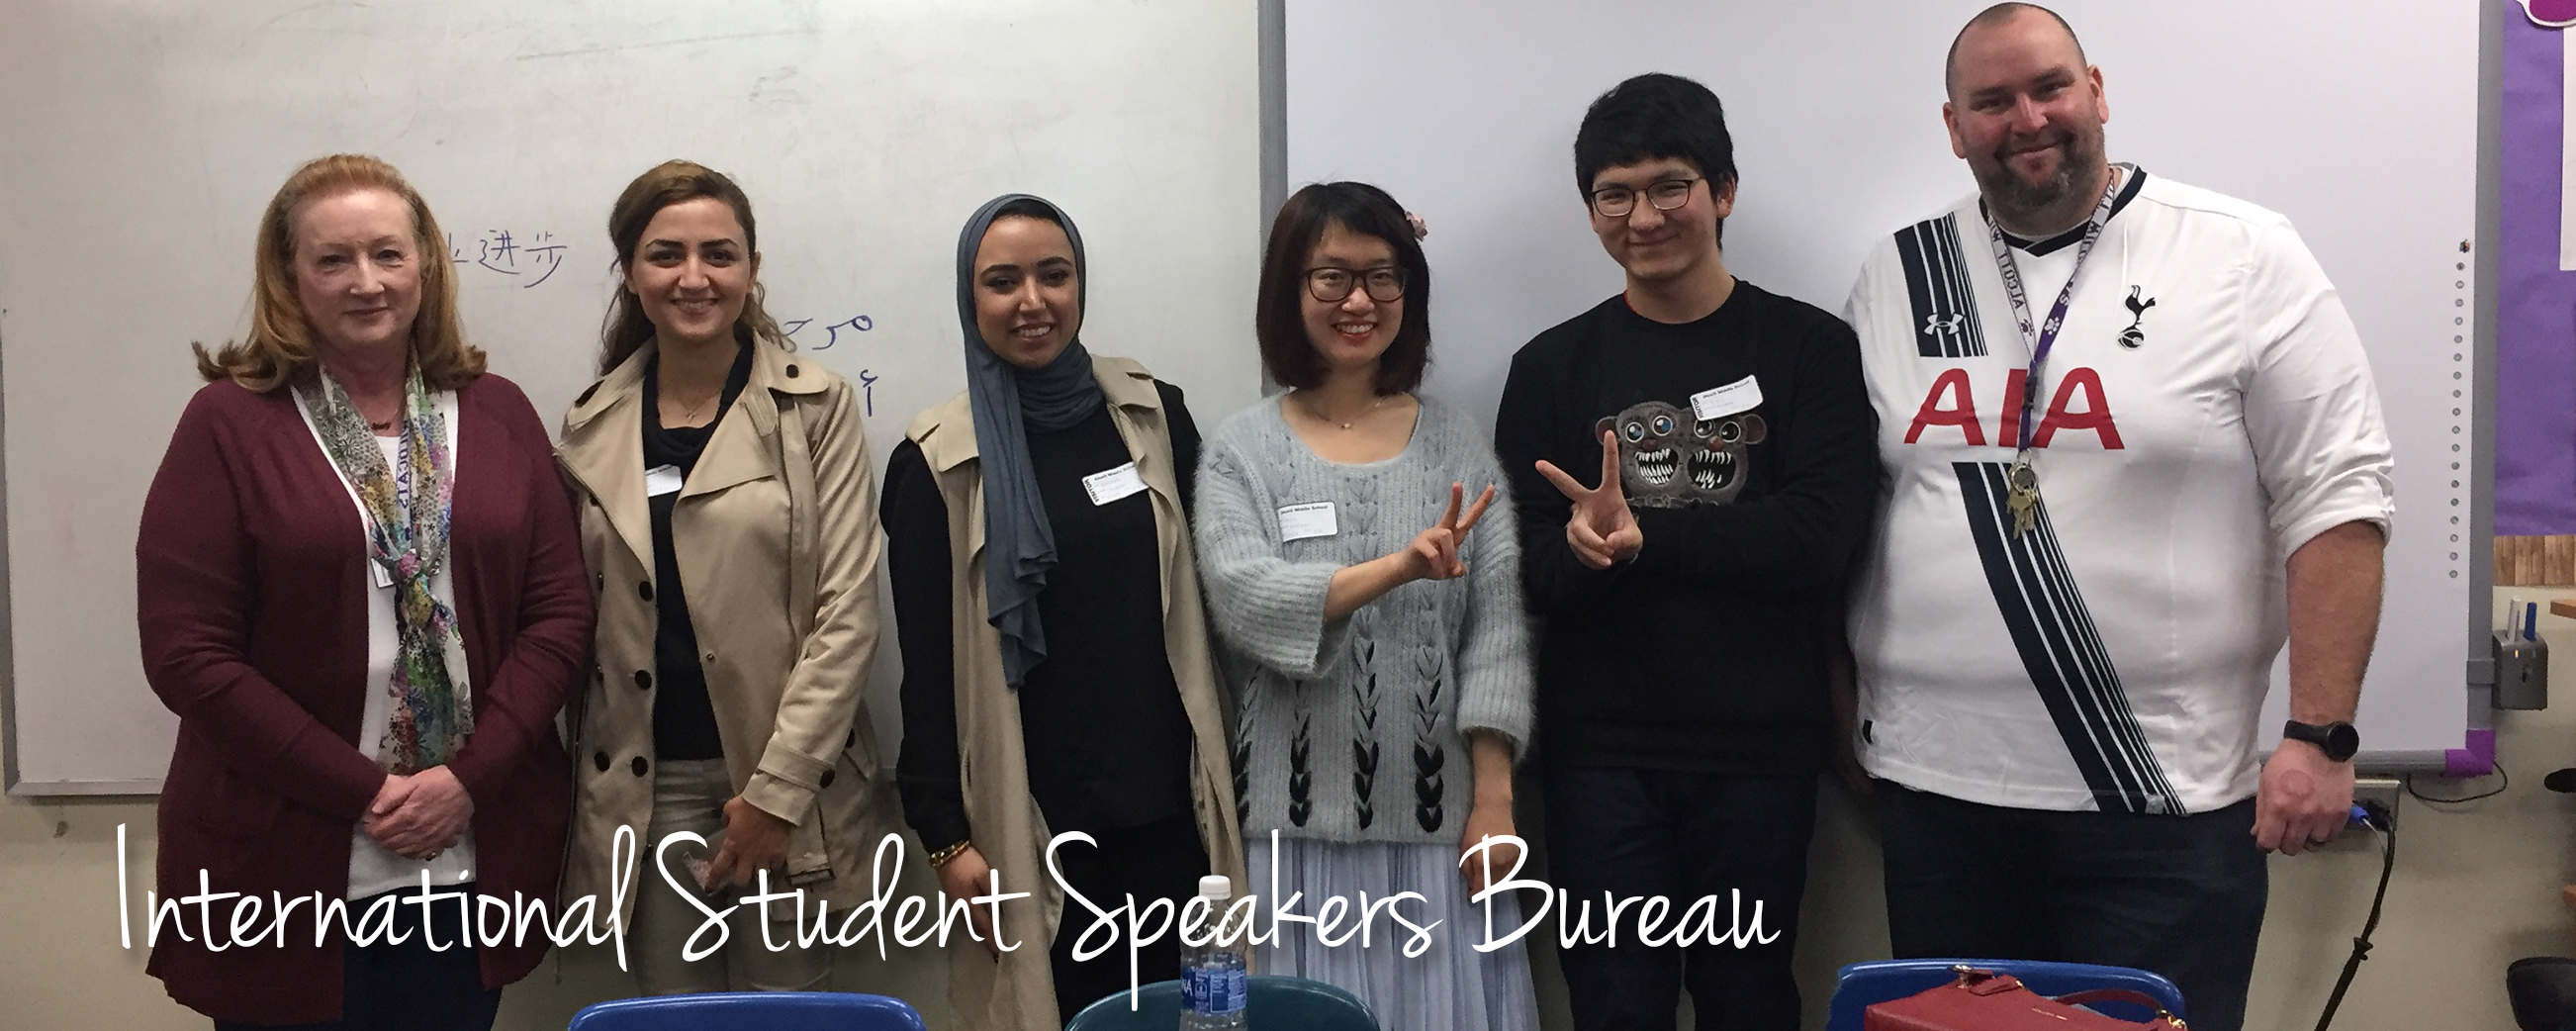 International Student Speakers Bureau